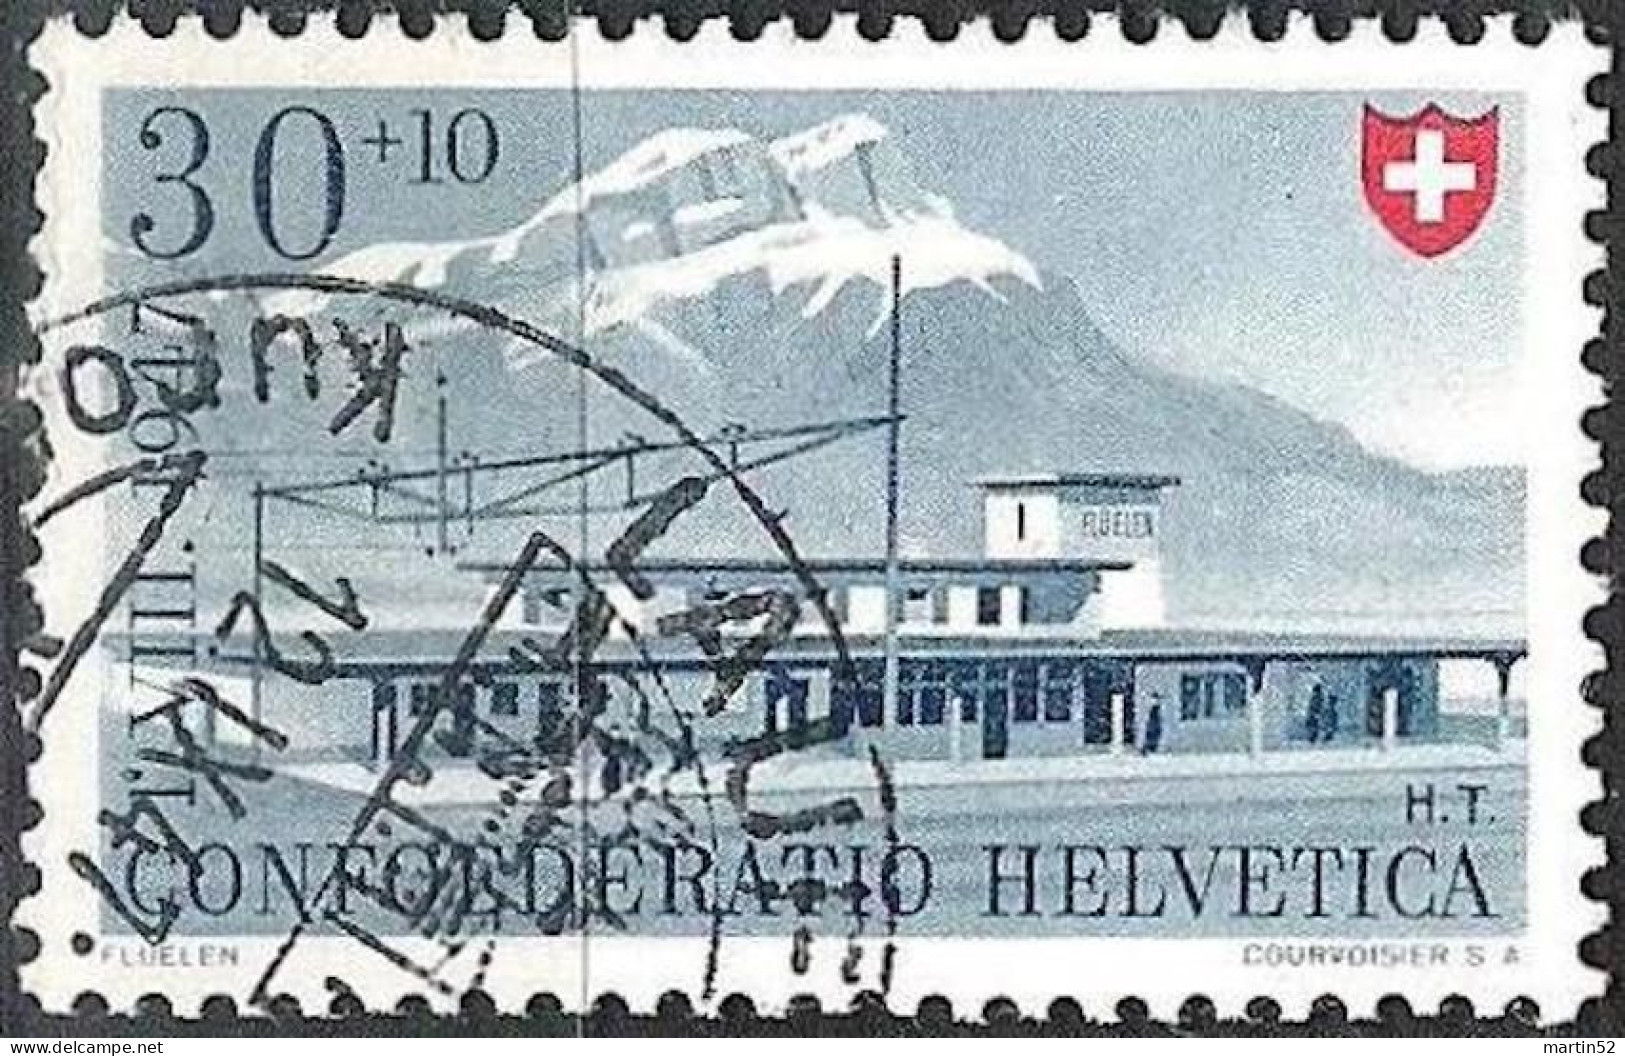 Schweiz Suisse PRO PATRIA 1947: FLÜELEN Zu WII 37 Mi 483 Yv 440 Mit K-Stempel LAUFENBURG 12.IX.47 (Zu CHF 18.00) - Used Stamps